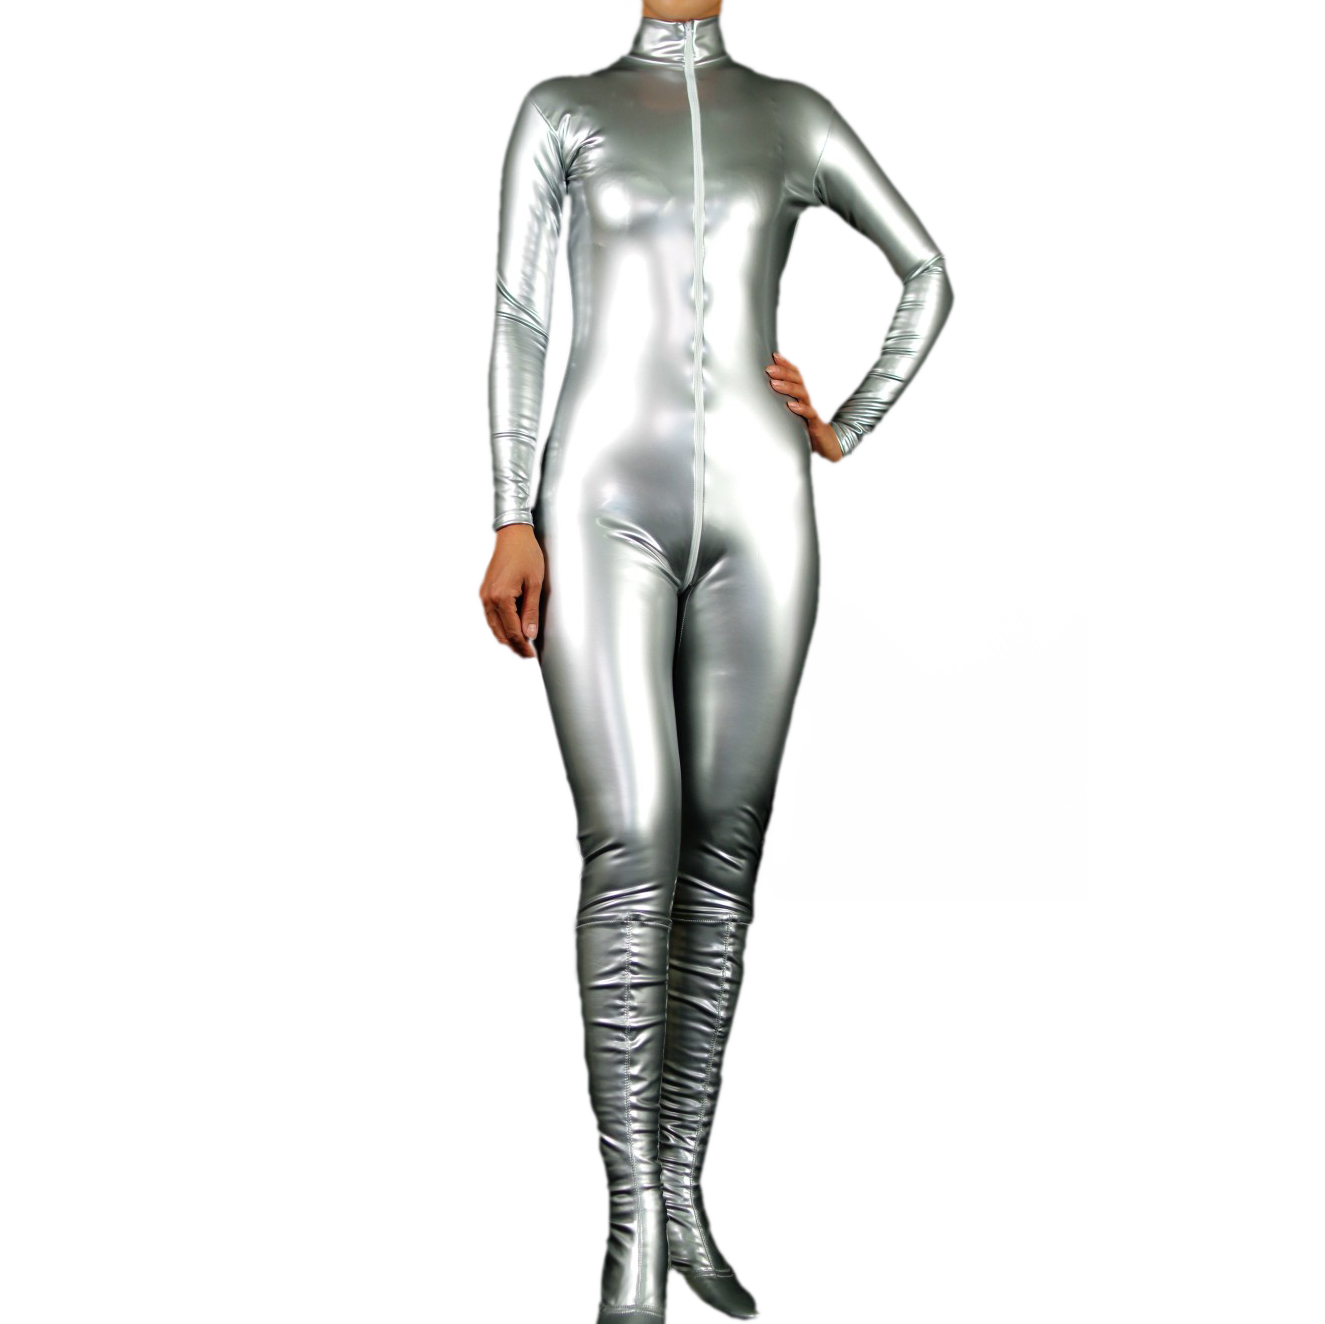 Women's Jumpsuit-styled Silver PVC Front Zipper Catsuit (M39)